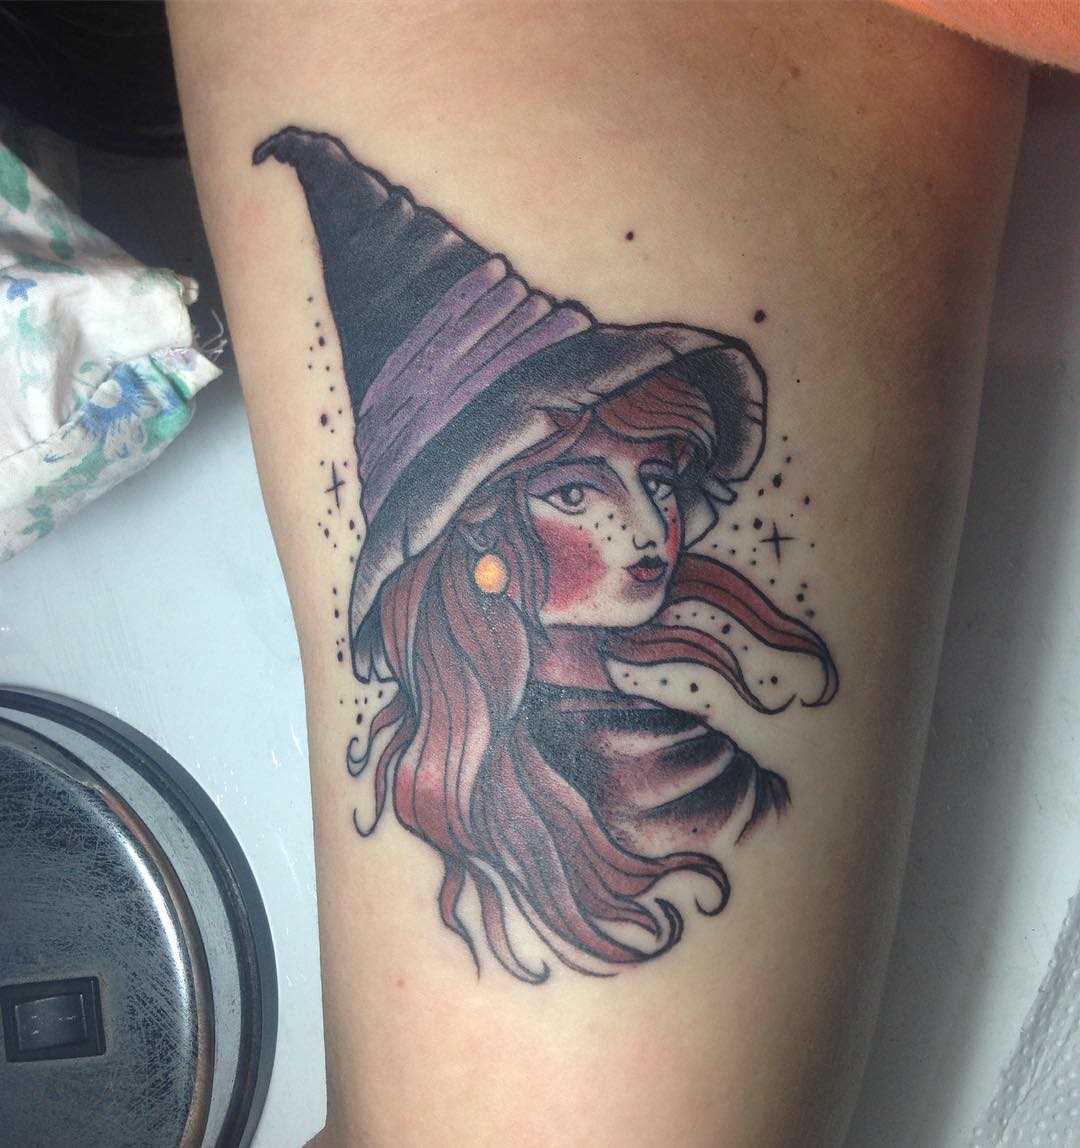 A tatuagem de bruxa na mão de um cara